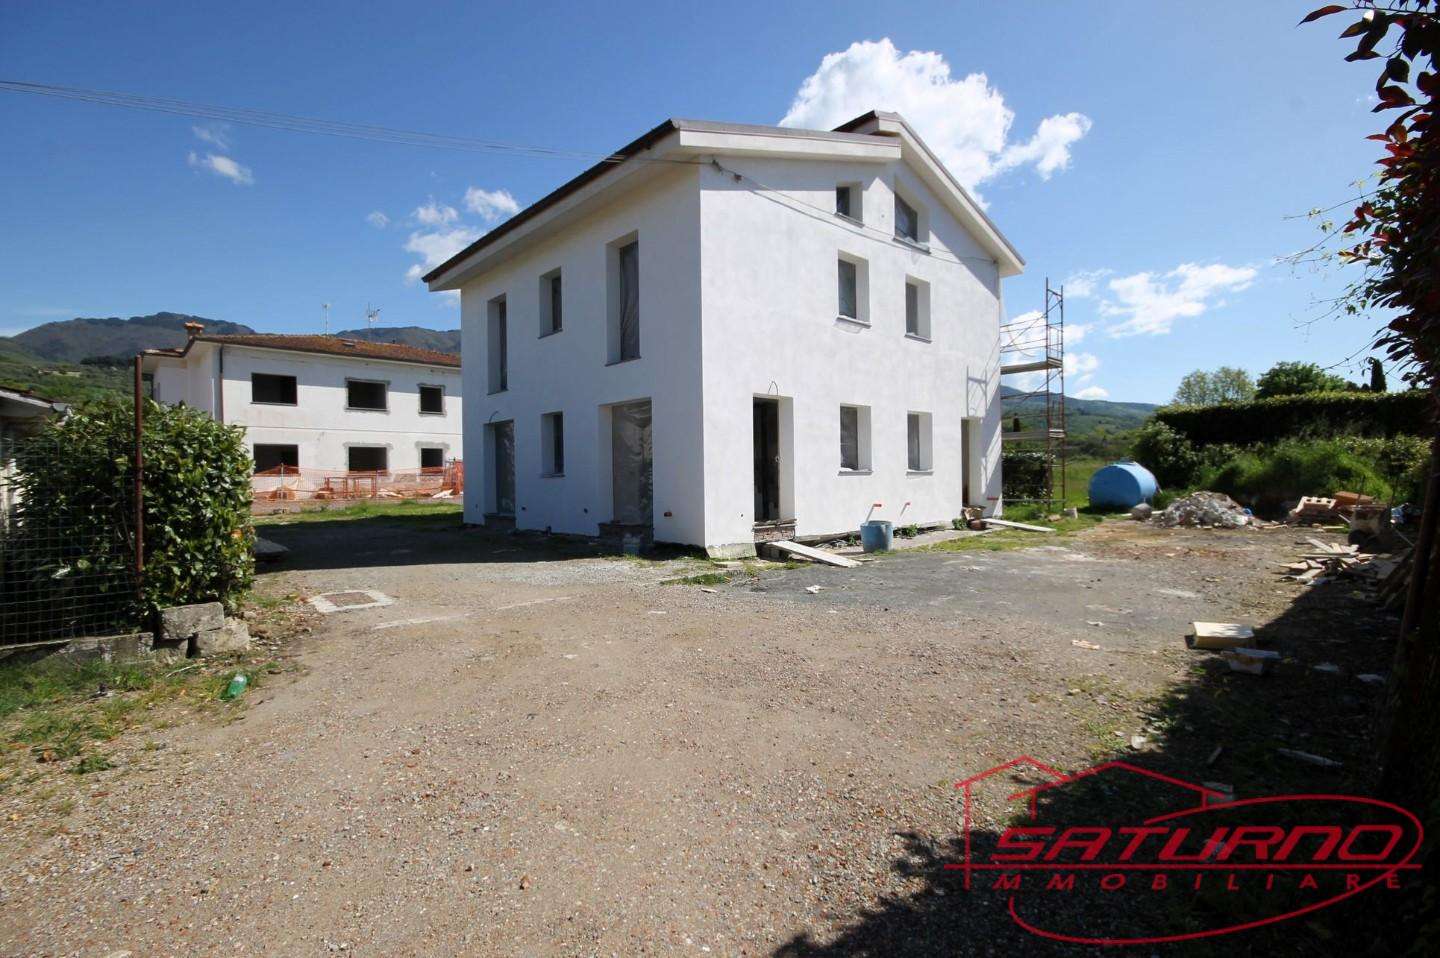 Casa Bi - Trifamiliare in Vendita a Capannori Marlia Villa Reale, 55012